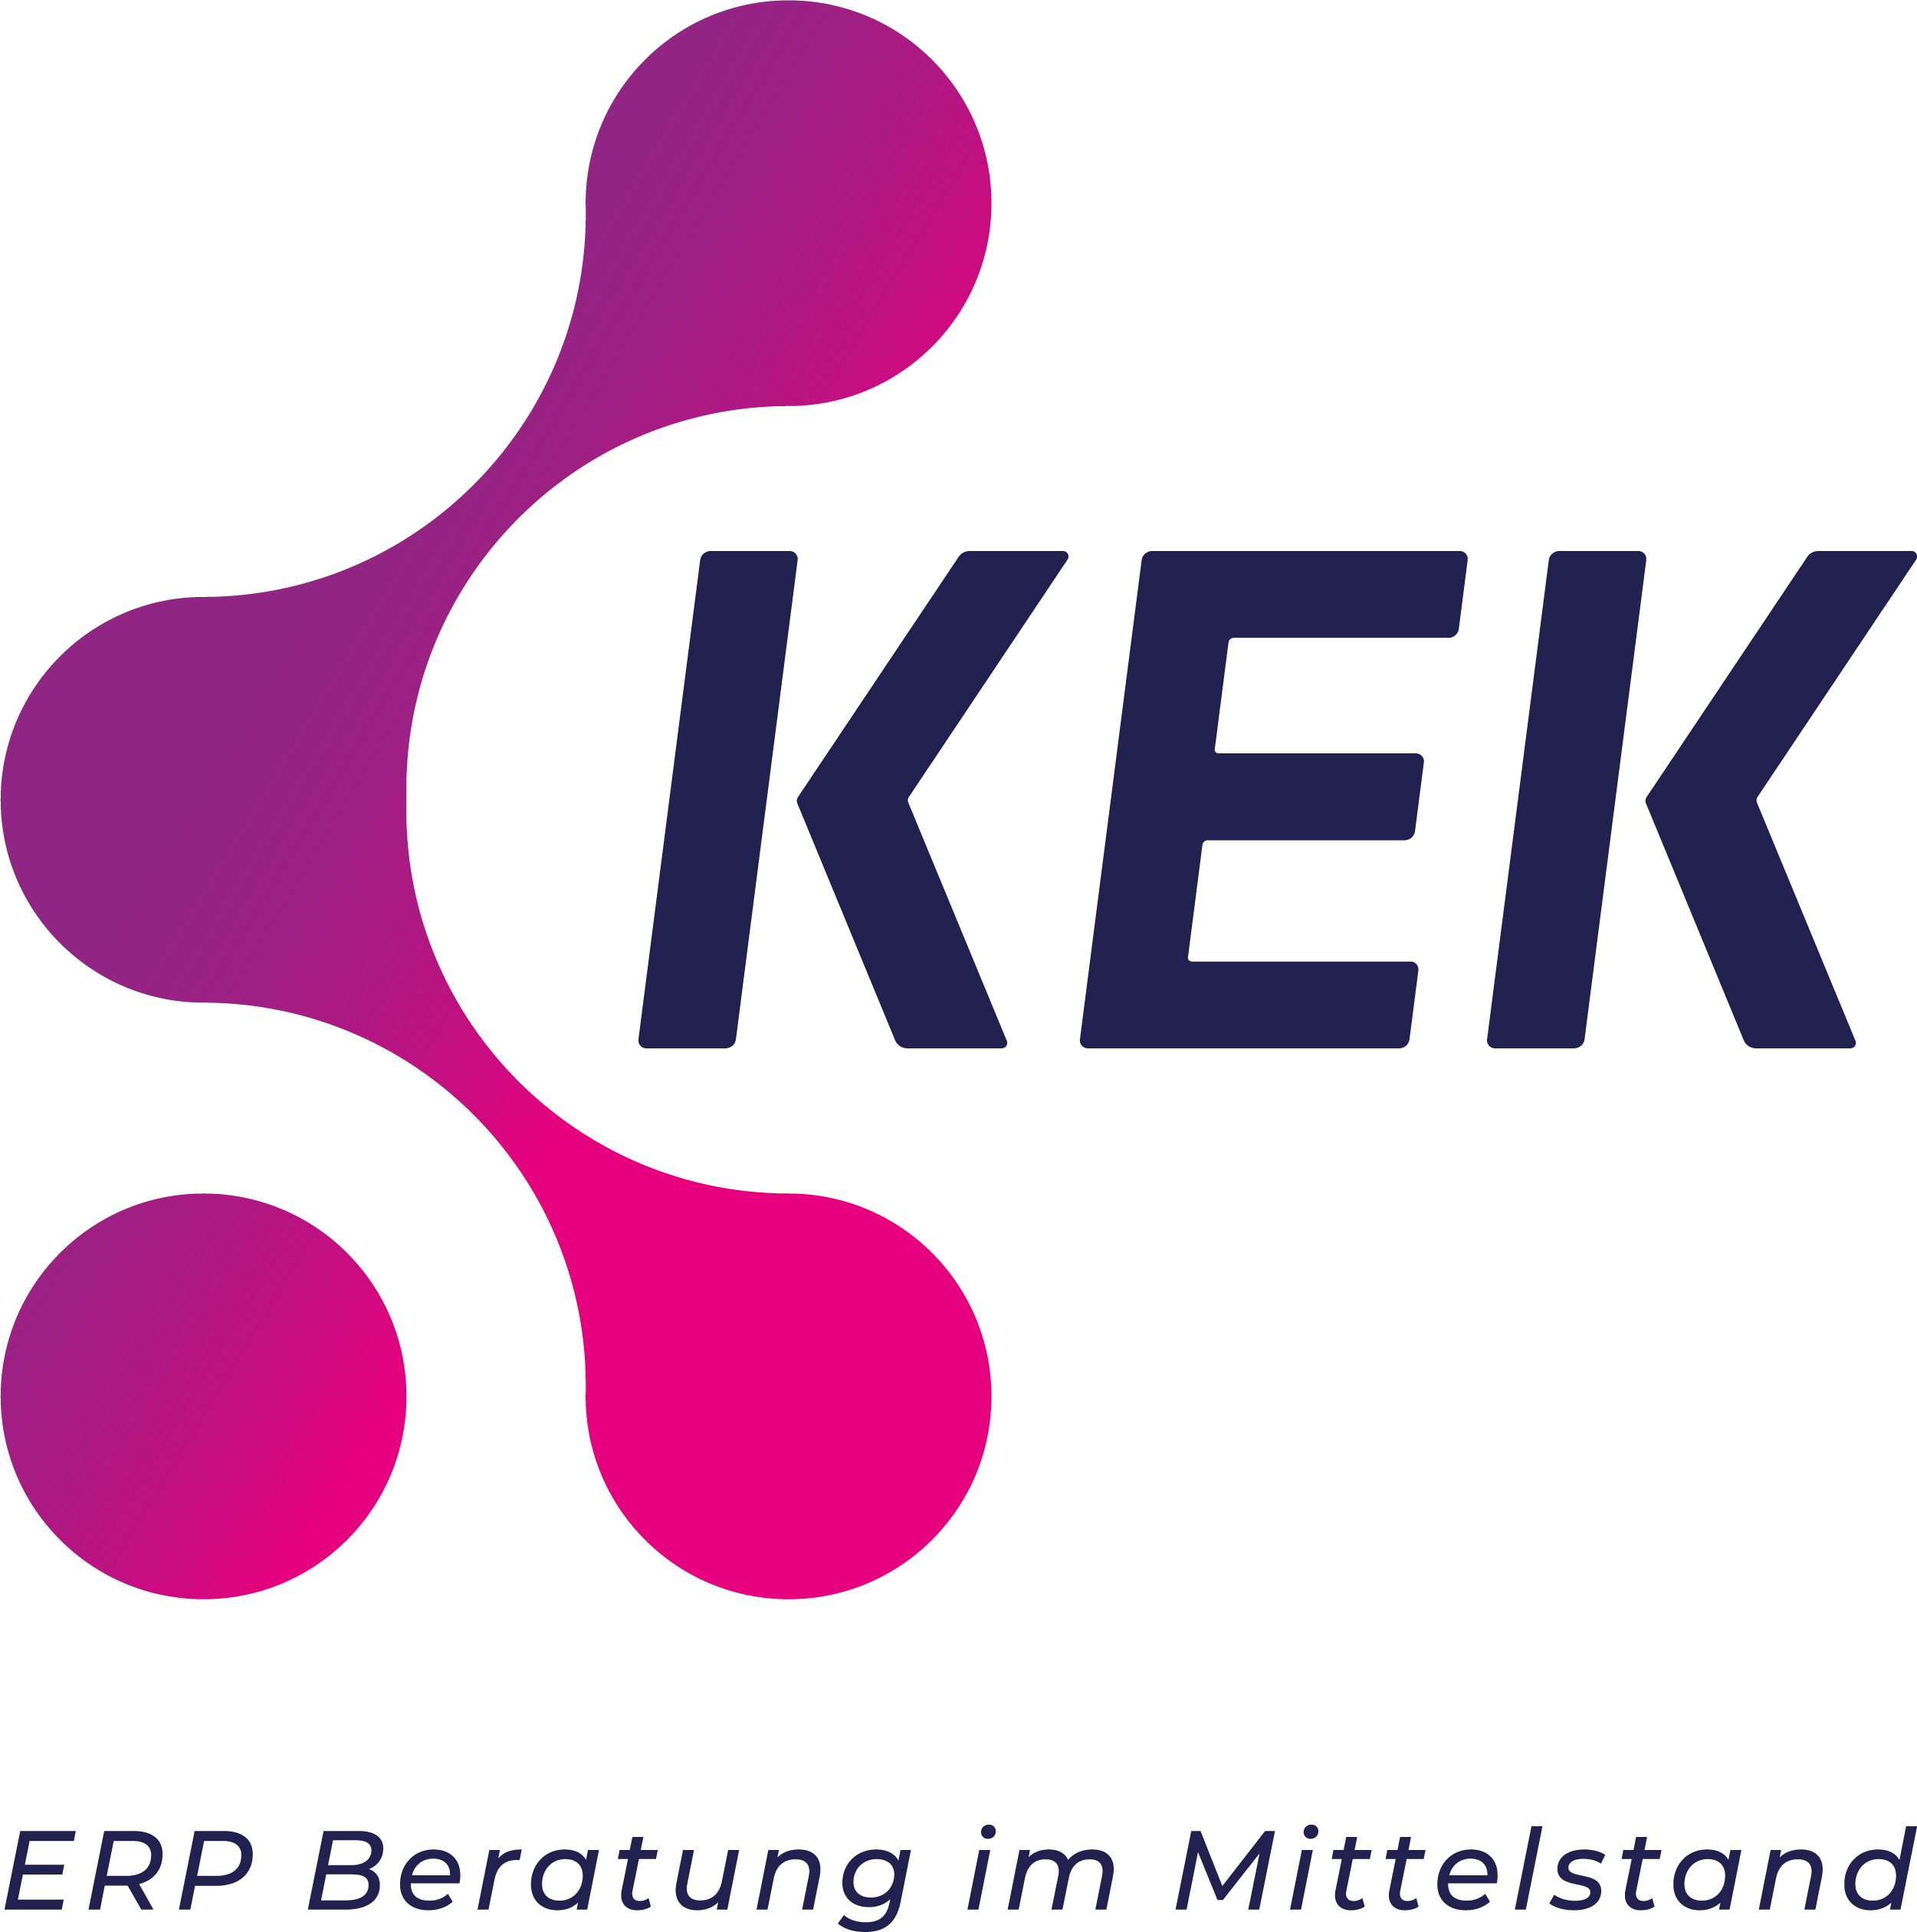 https://www.mittelstand-in-deutschland.de/upload/member/952/KEK-Logo-RGB_mit-Titelzeile-3C-Klassisch.png